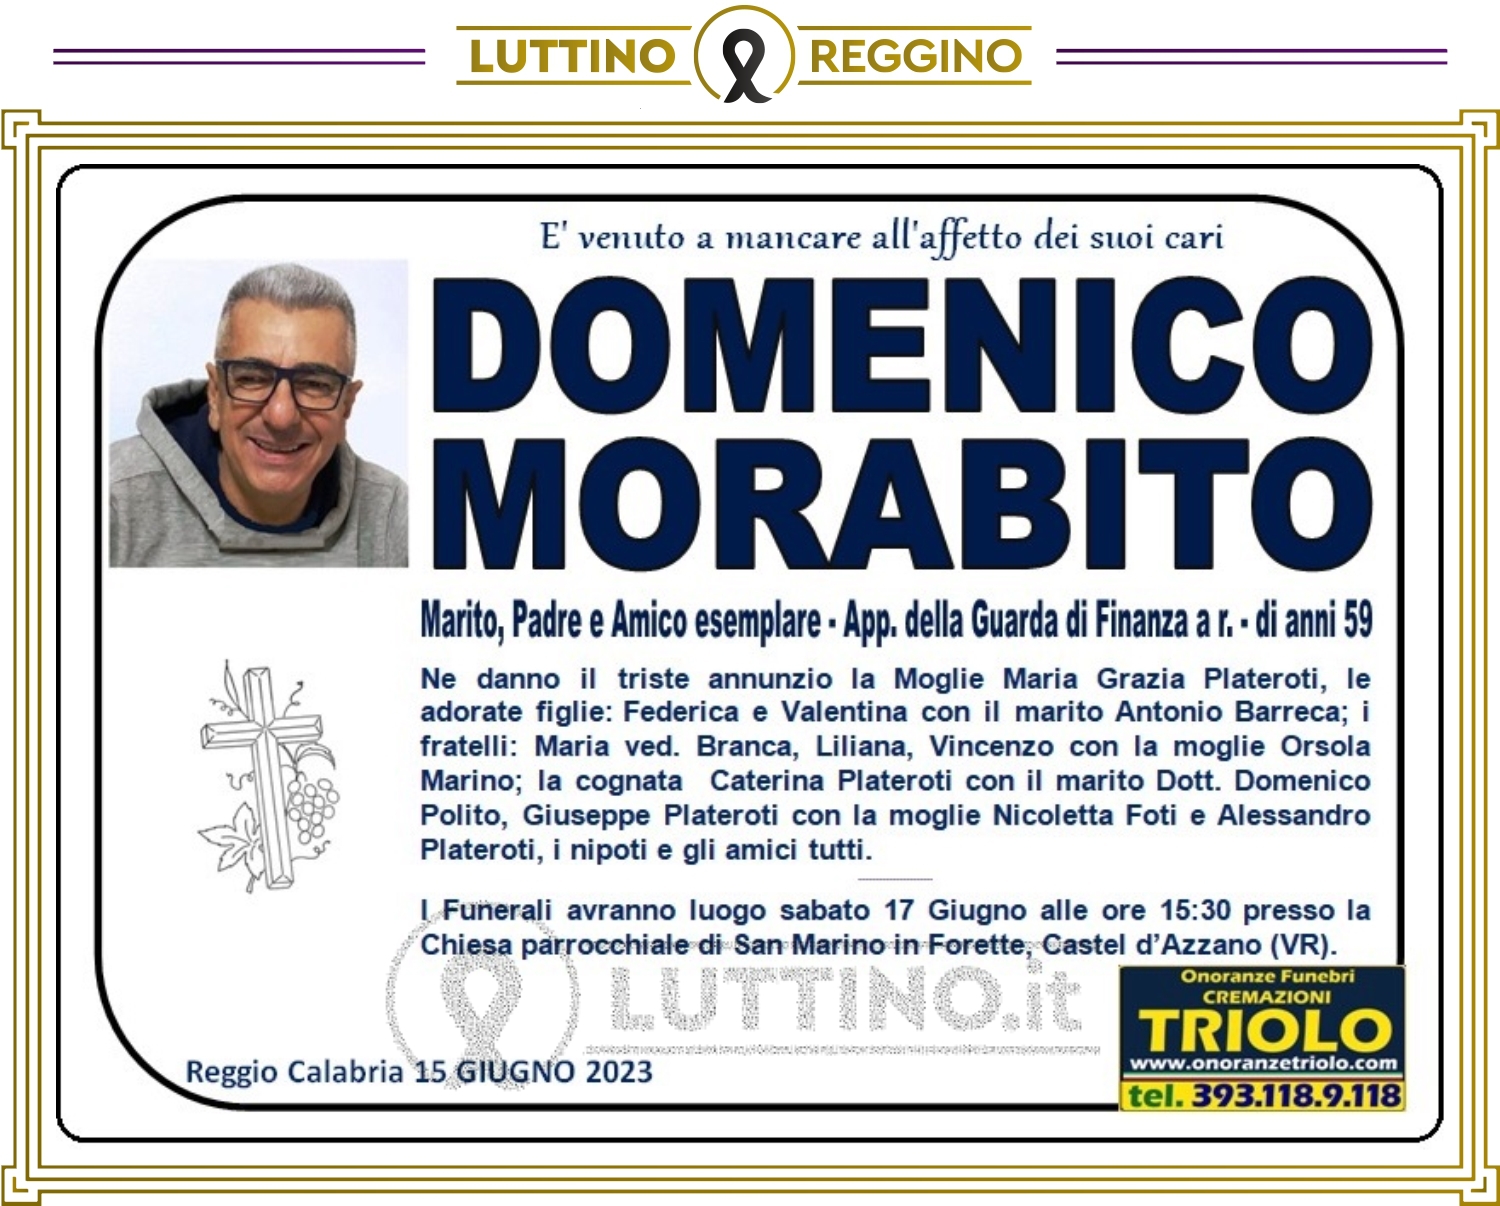 Domenico Morabito